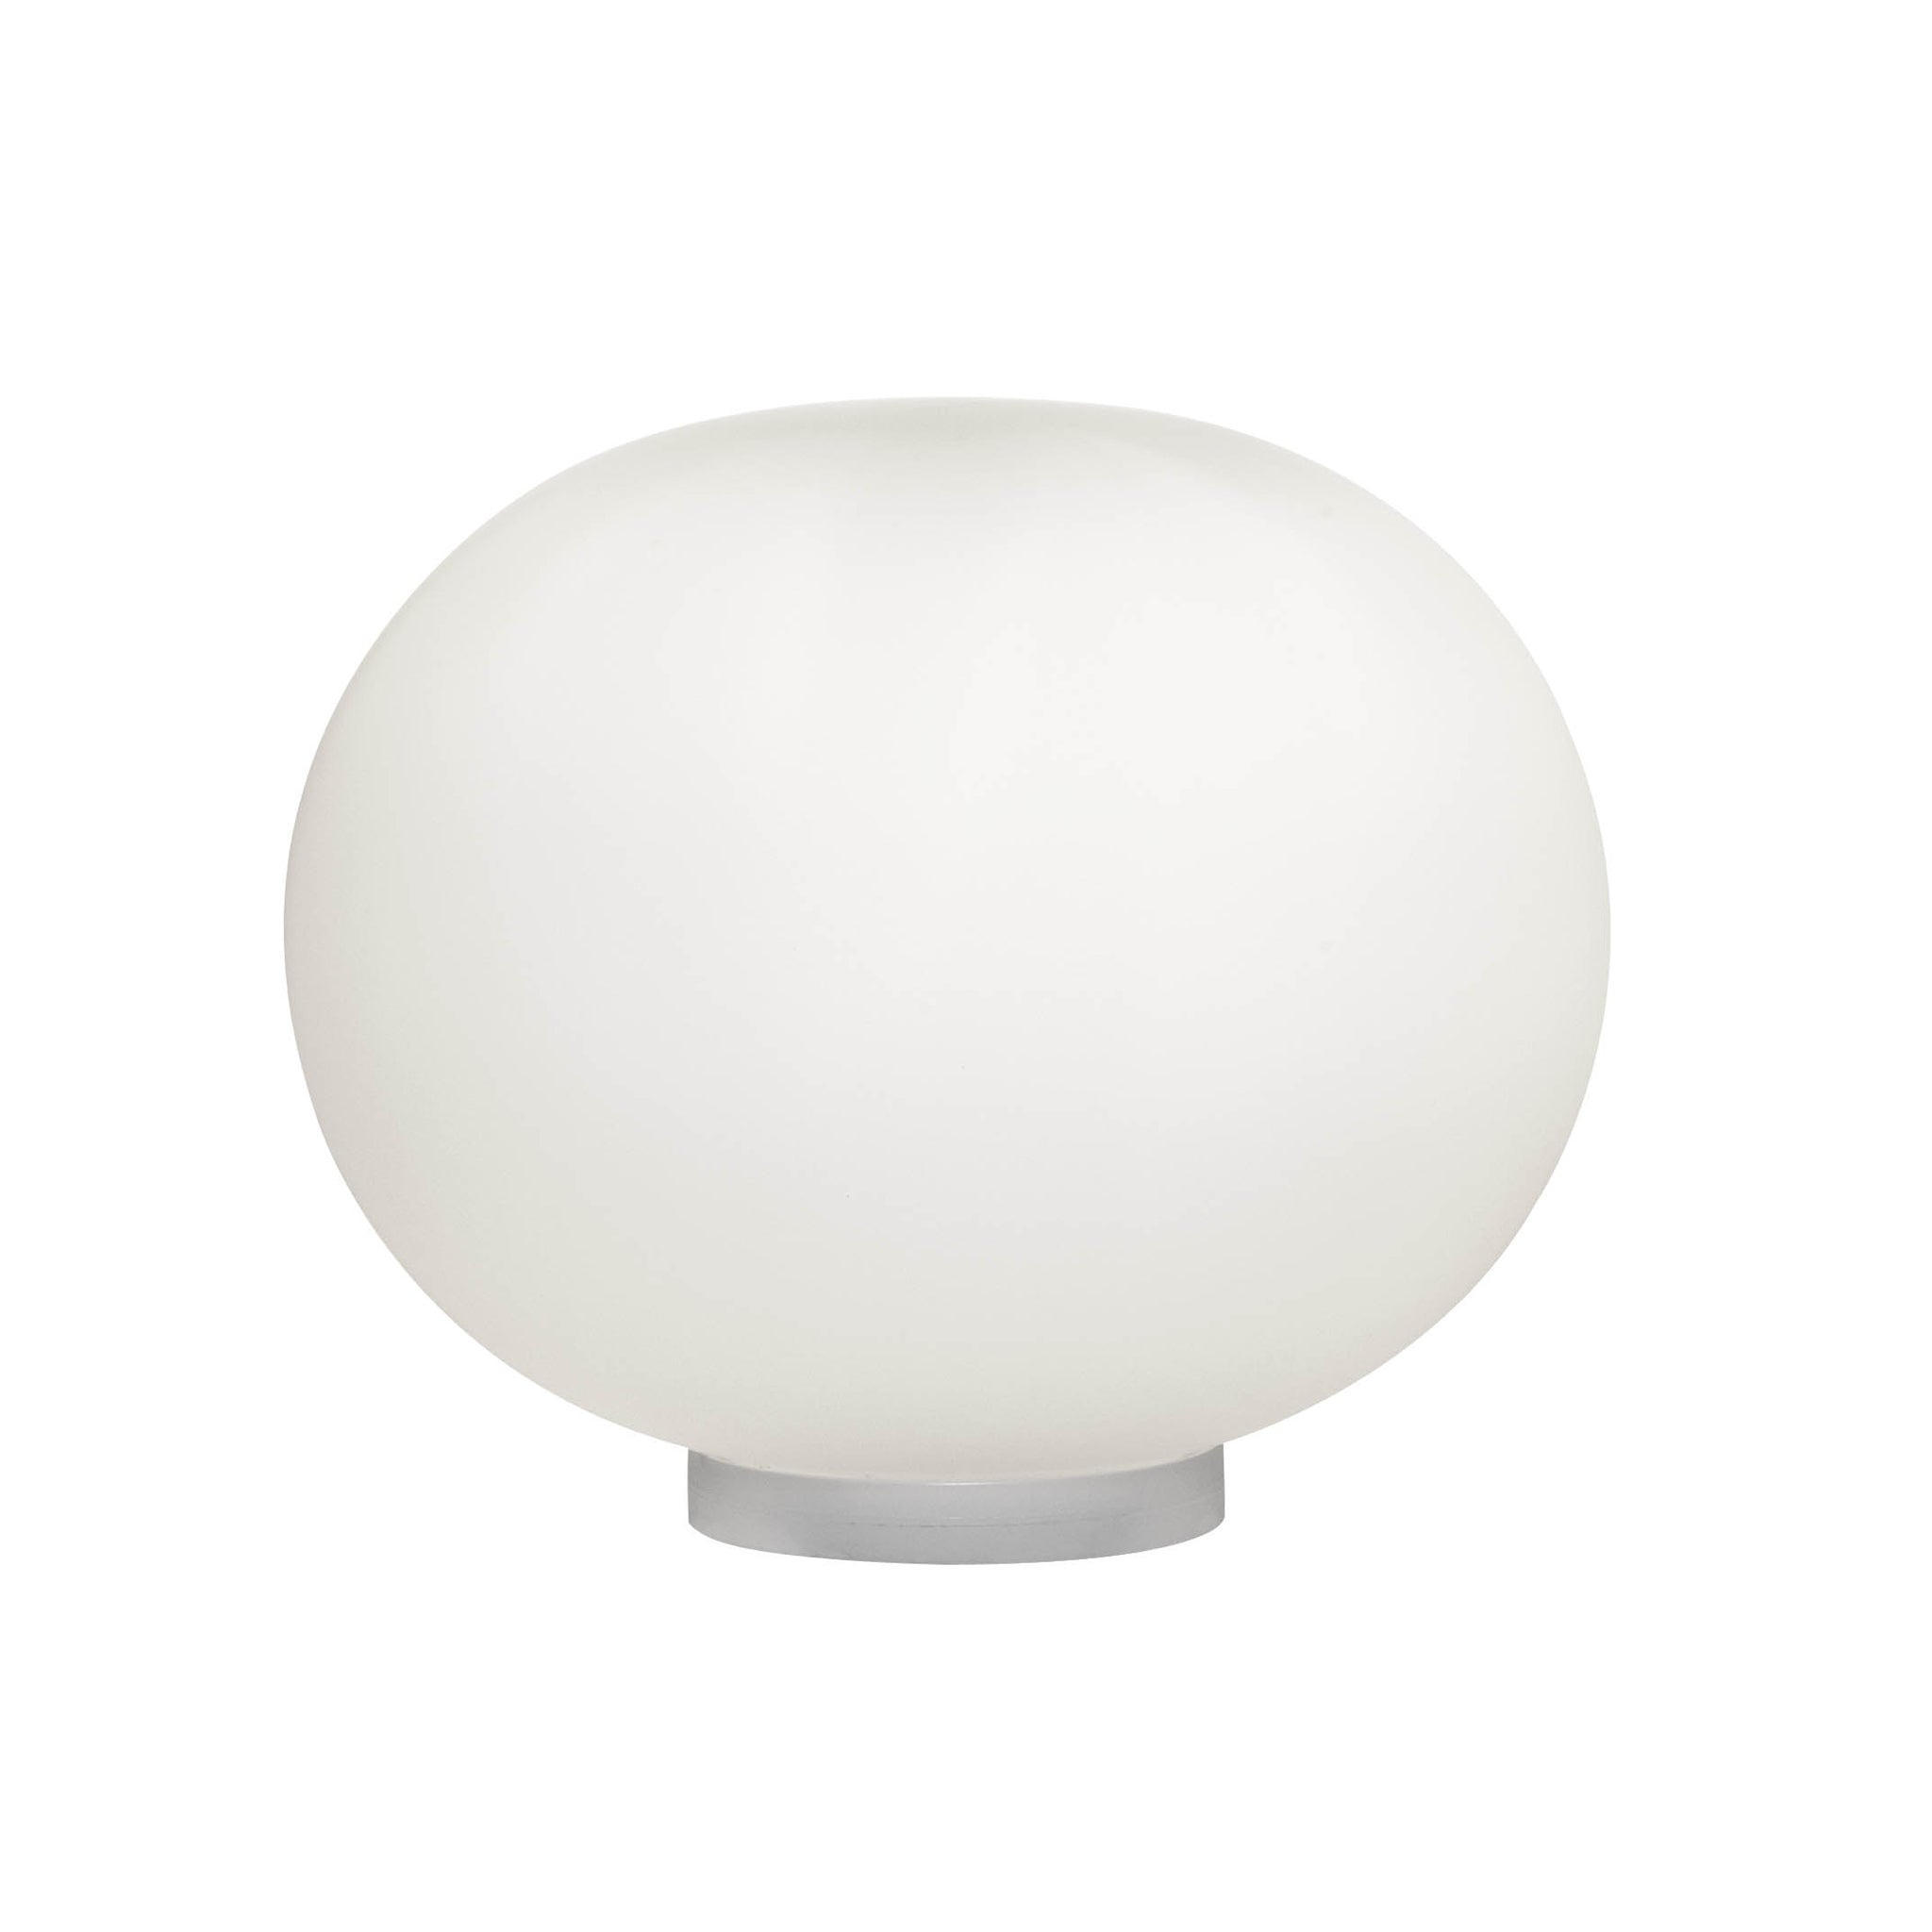 Glo-Ball Basic Zero Table / Floor Lamp by Jasper Morrison for Flos